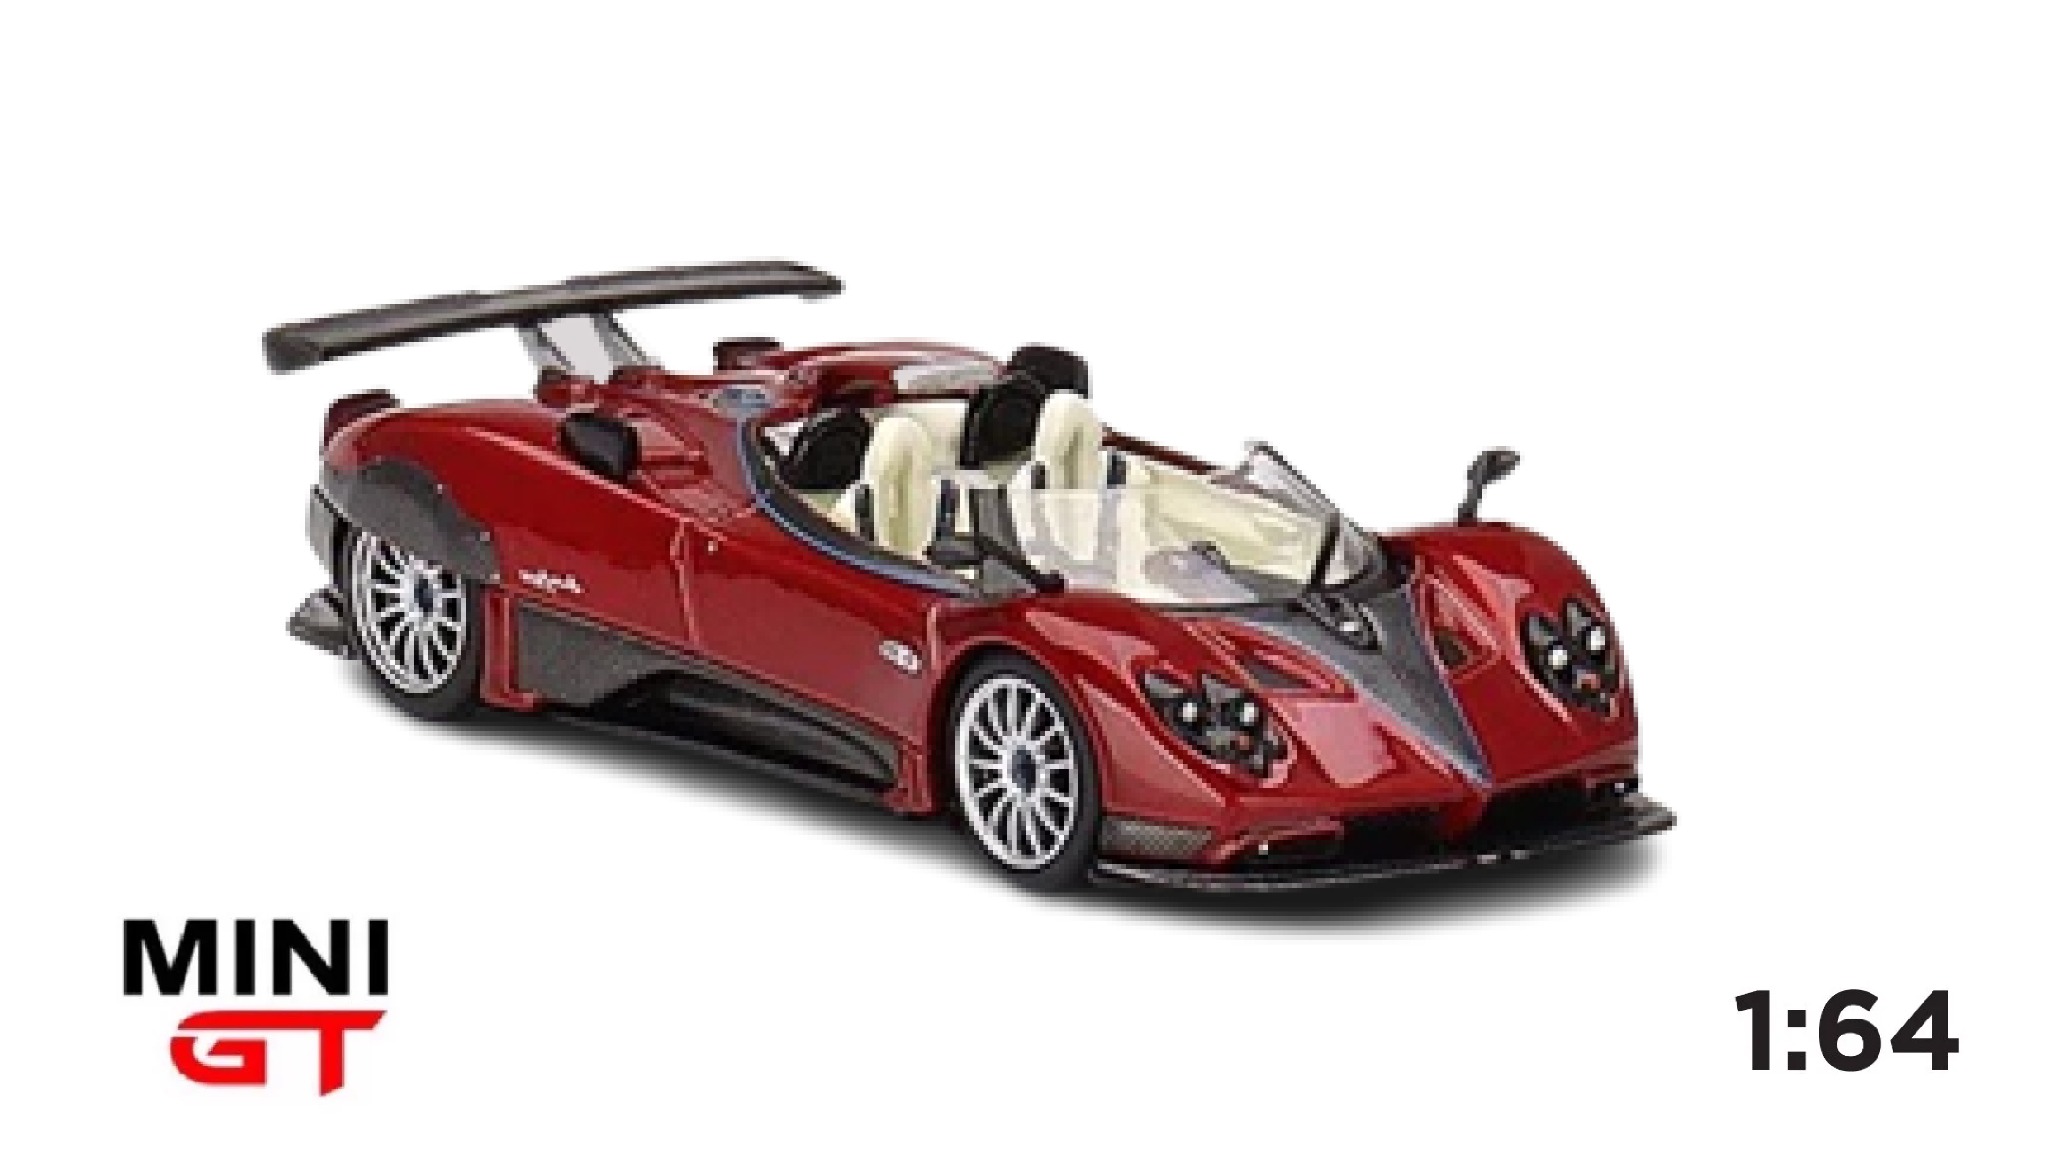  Mô hình xe Pagani Zonda HP Barchetta Rosso Dubai tỉ lệ 1:64 Minigt 